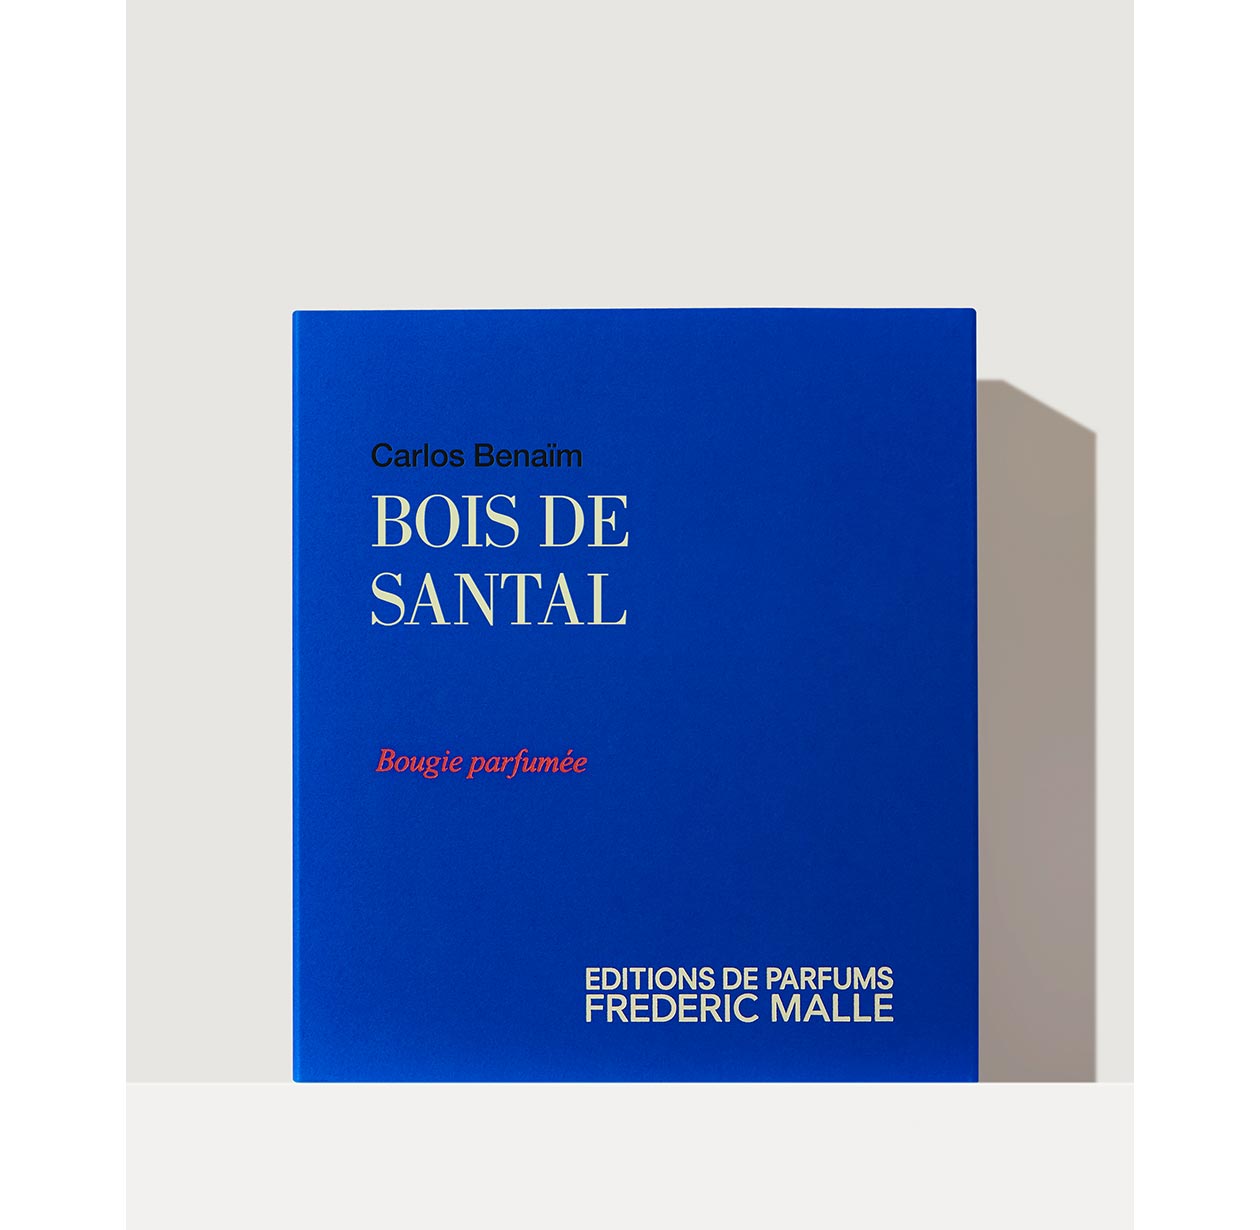 BOIS DE SANTAL by Carlos Benaim - Candle